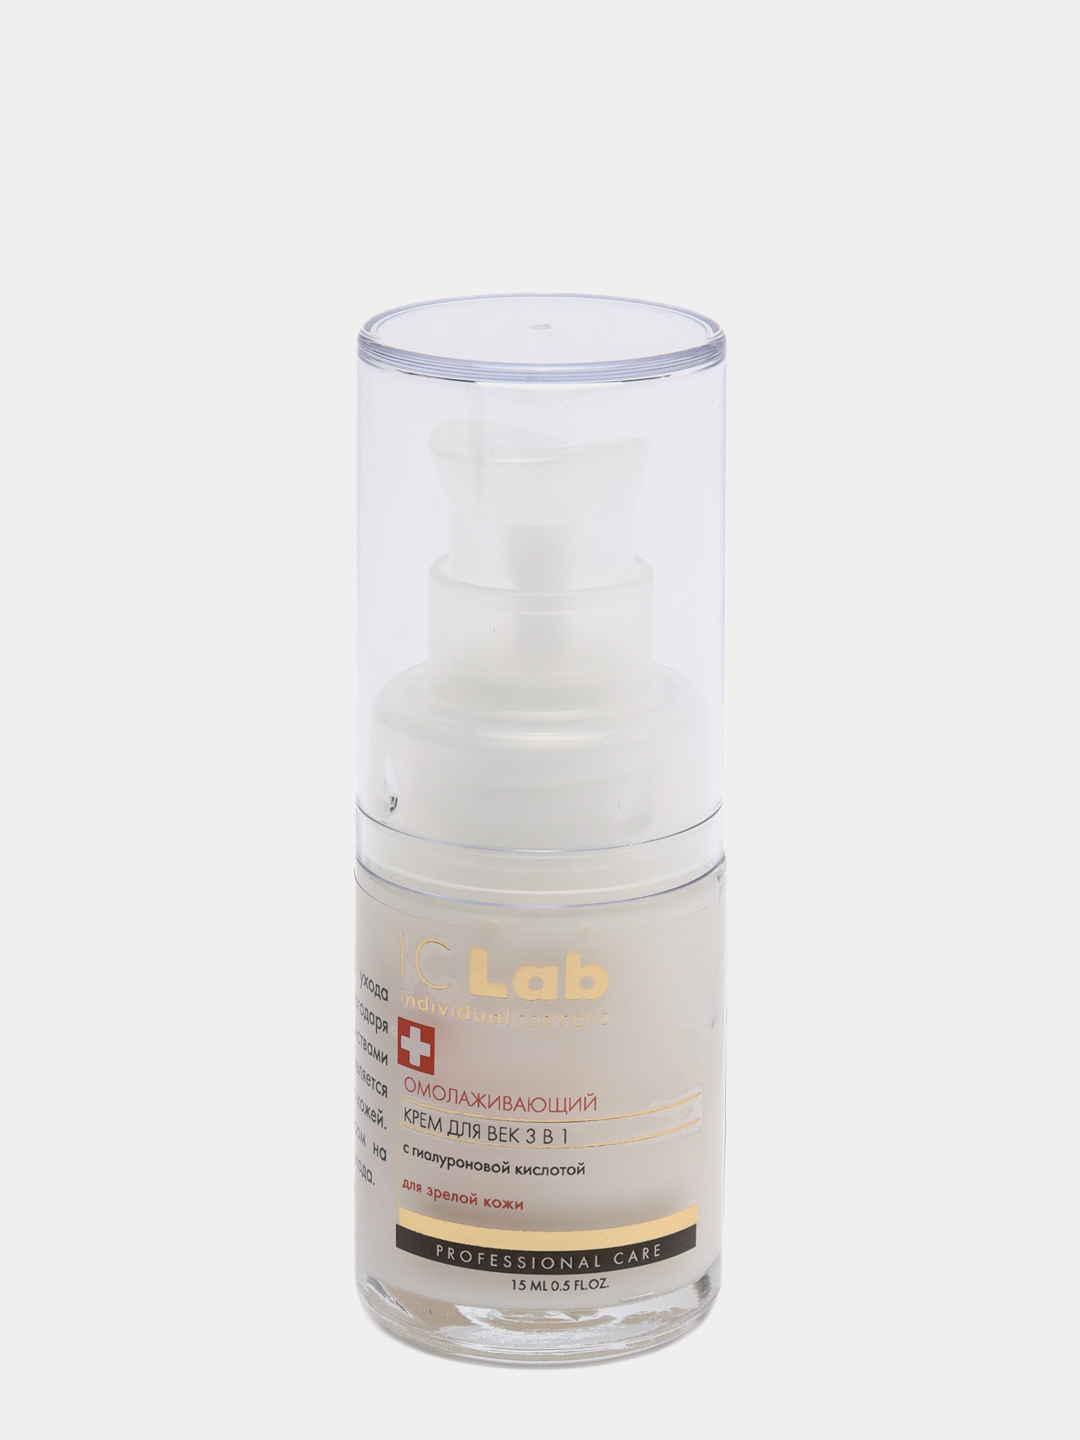 Сыворотка хайлайтер. Крем Lab individual Cosmetic. Ic-Lab моделирующая филлер-сыворотка для лица.